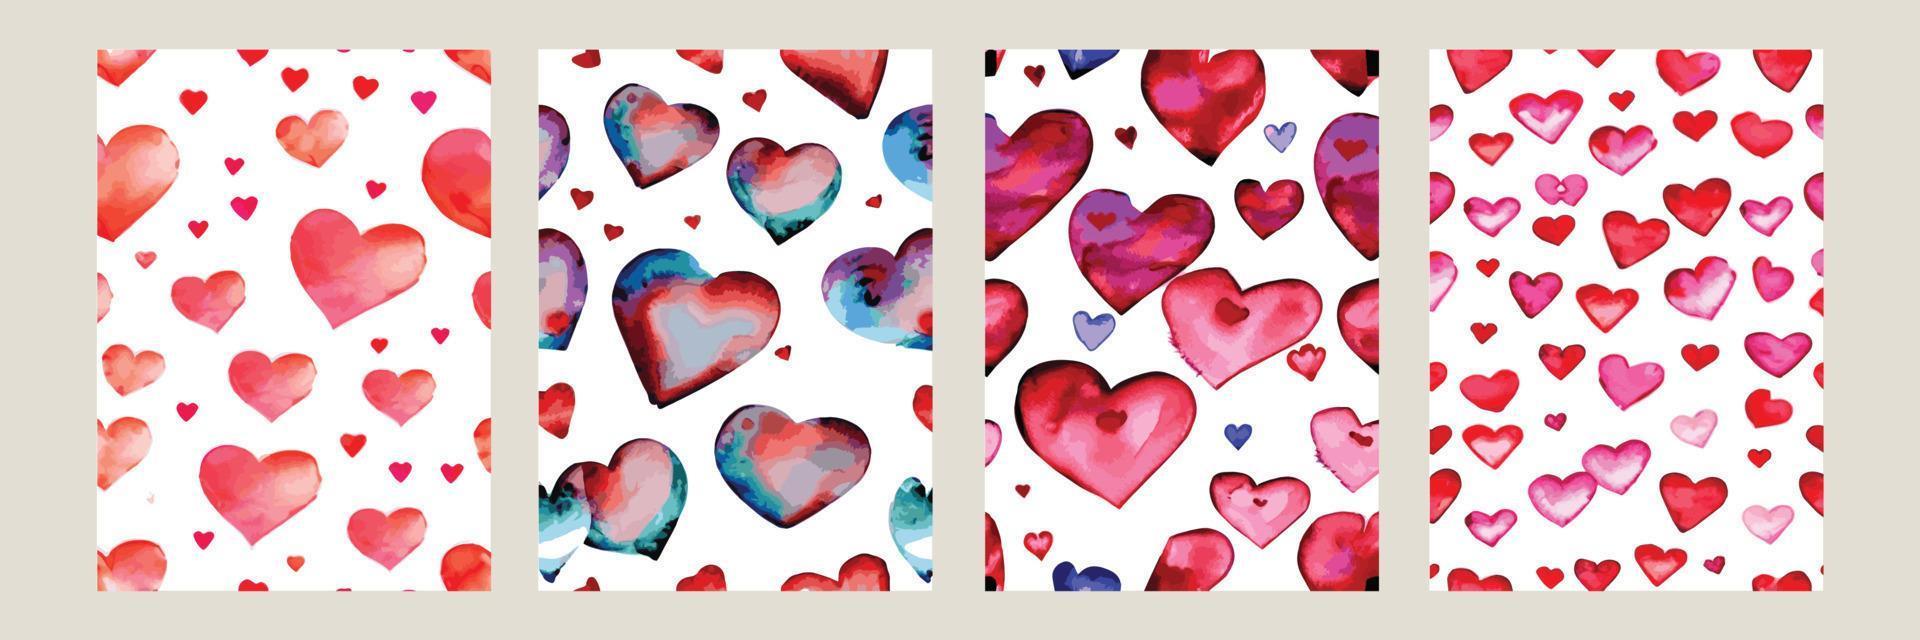 patrón de corazón, fondo transparente de vector. se puede usar para invitación de boda, tarjeta para el día de san valentín o tarjeta de amor. vector